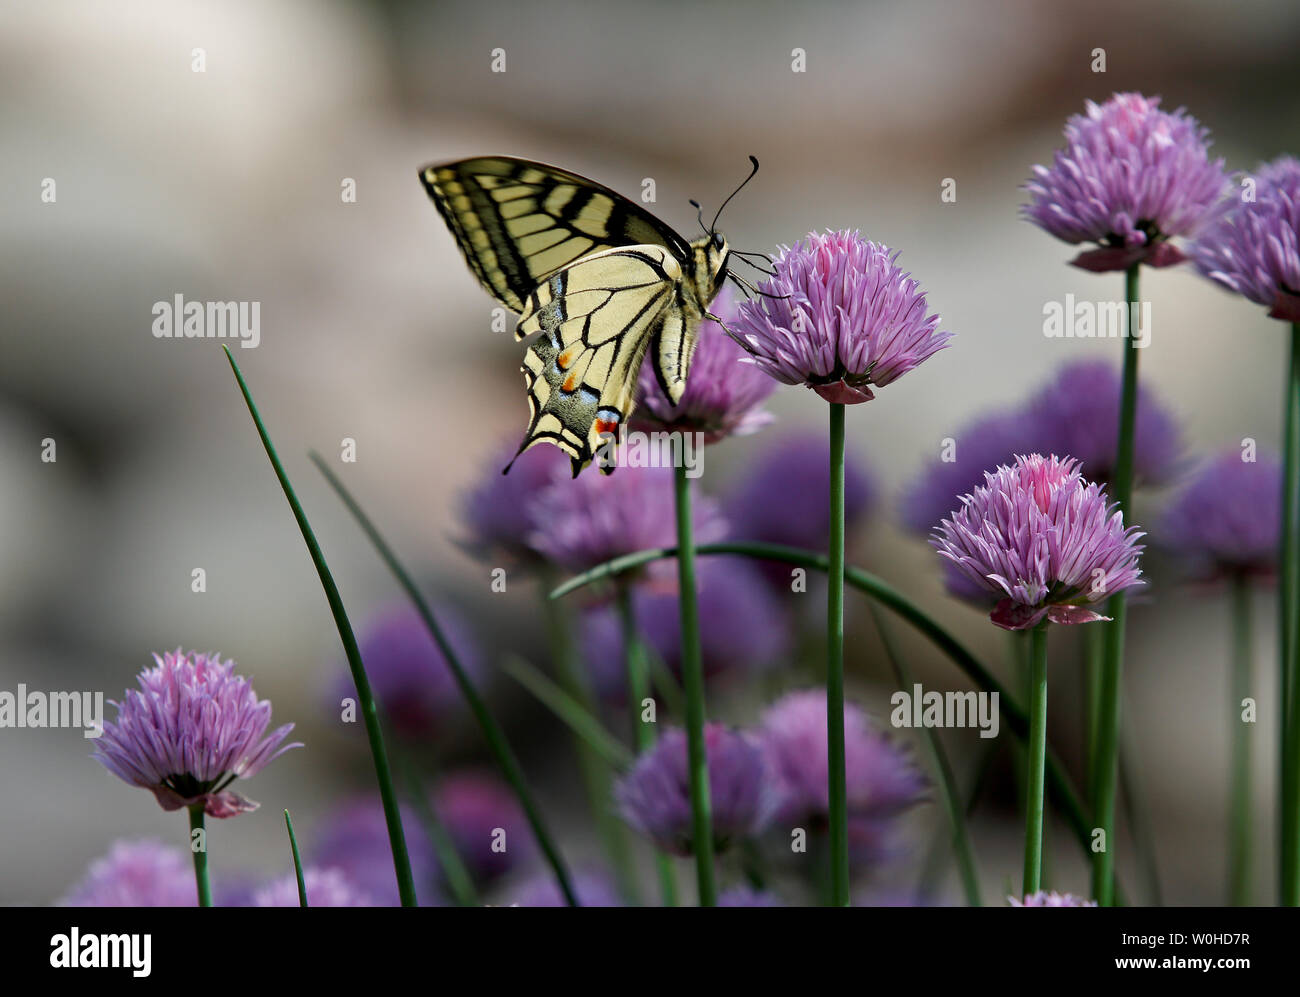 Il vecchio mondo coda forcuta (Papilio machaon) ali in movimento su e giù mentre si alimenta in erba cipollina. Foto Stock